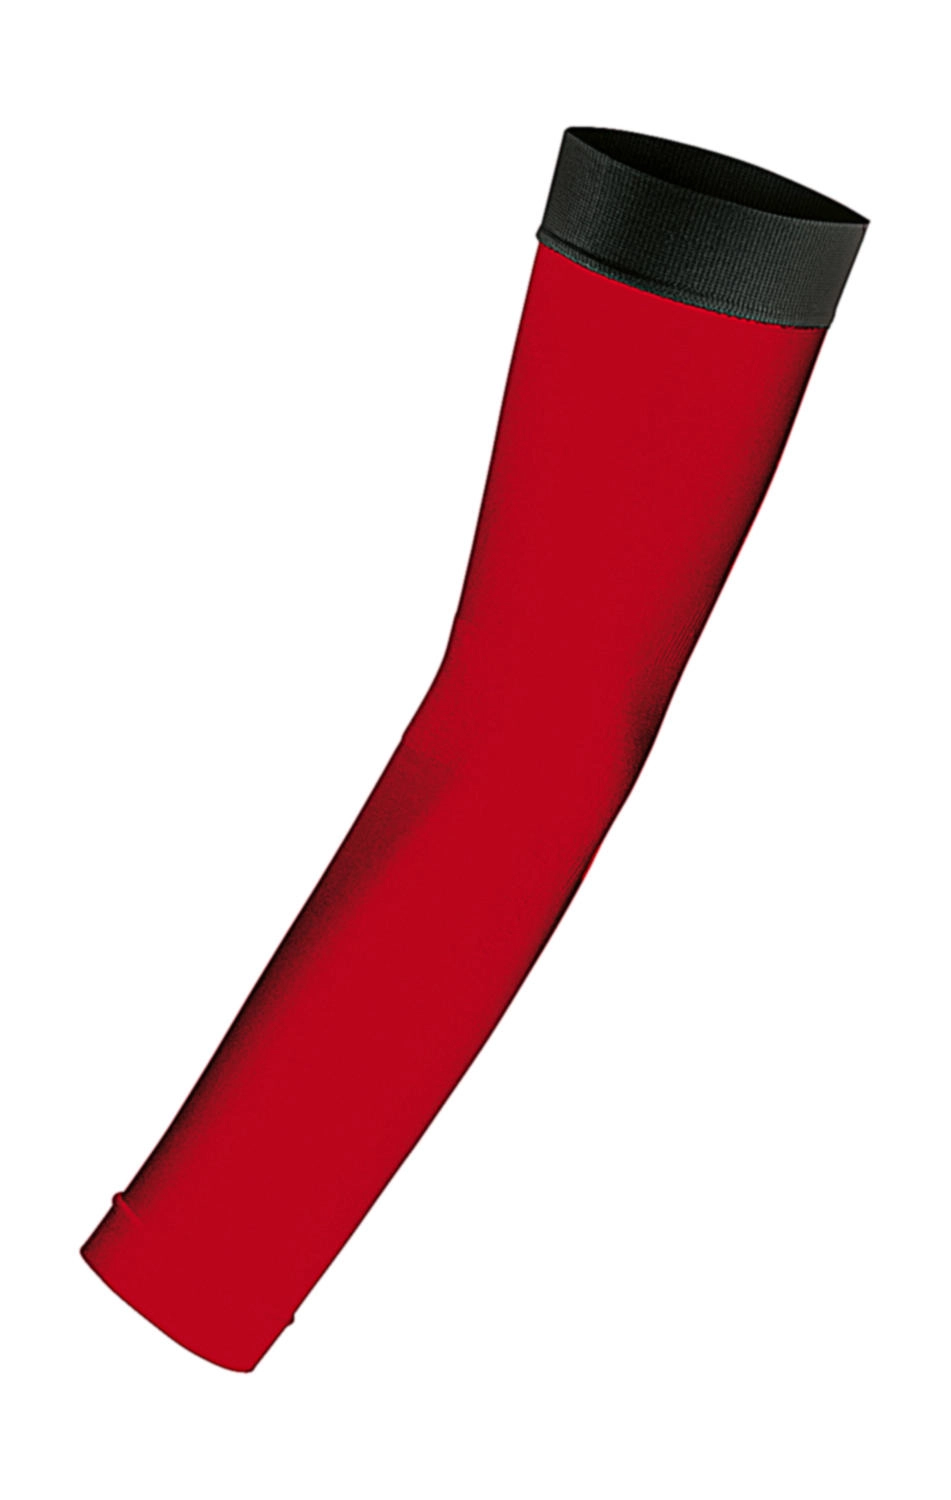 Compression Arm Sleeve zum Besticken und Bedrucken in der Farbe Red/Black mit Ihren Logo, Schriftzug oder Motiv.